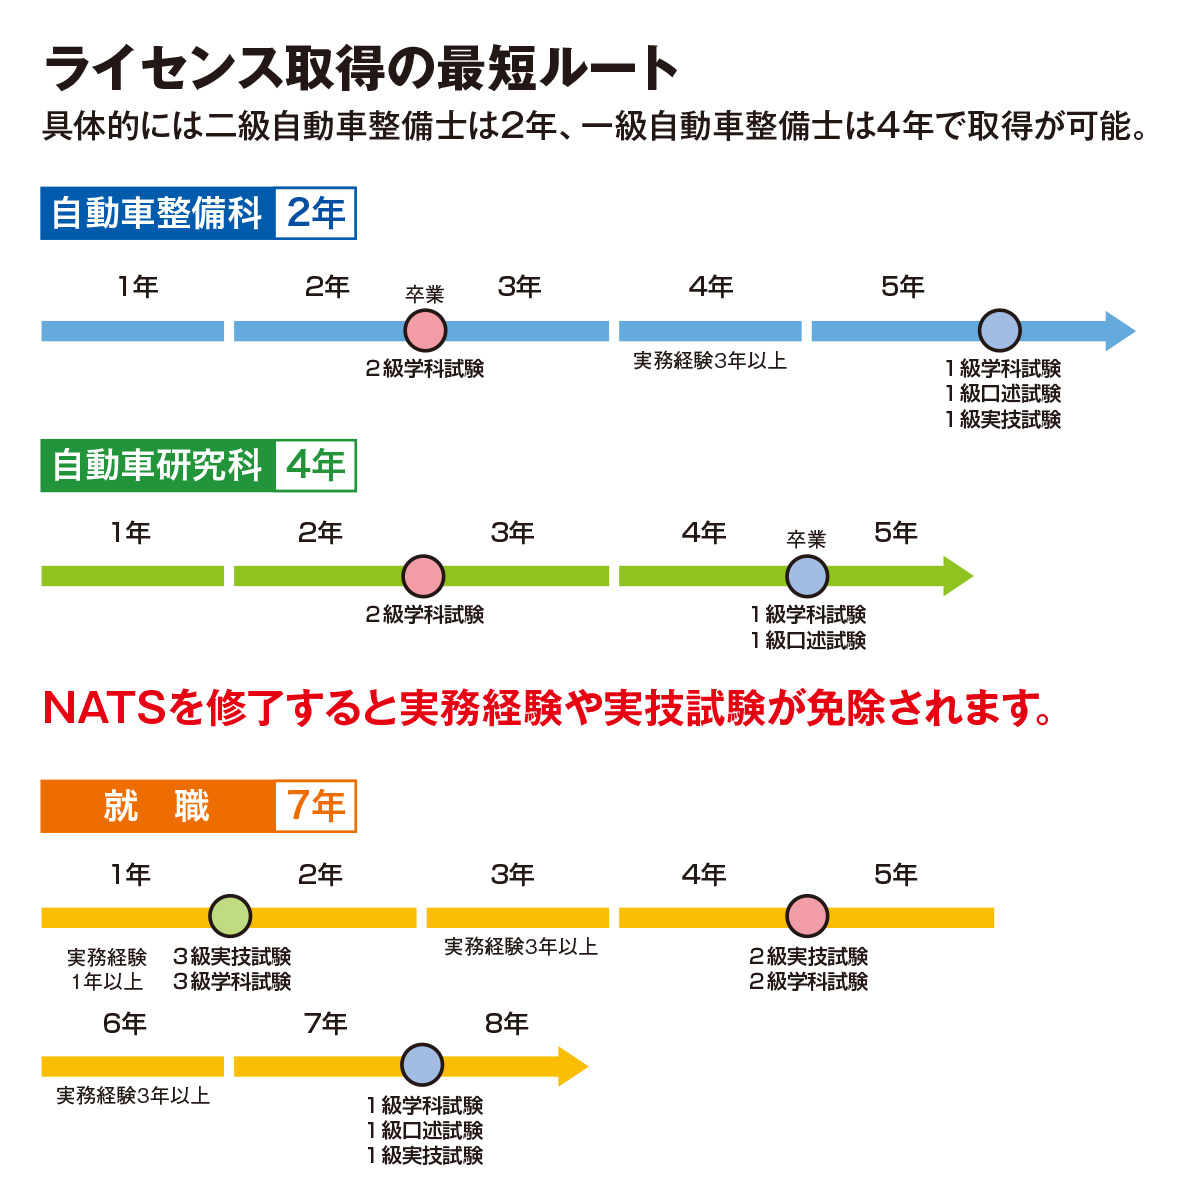 Nats 日本自動車大学校 取得できる資格